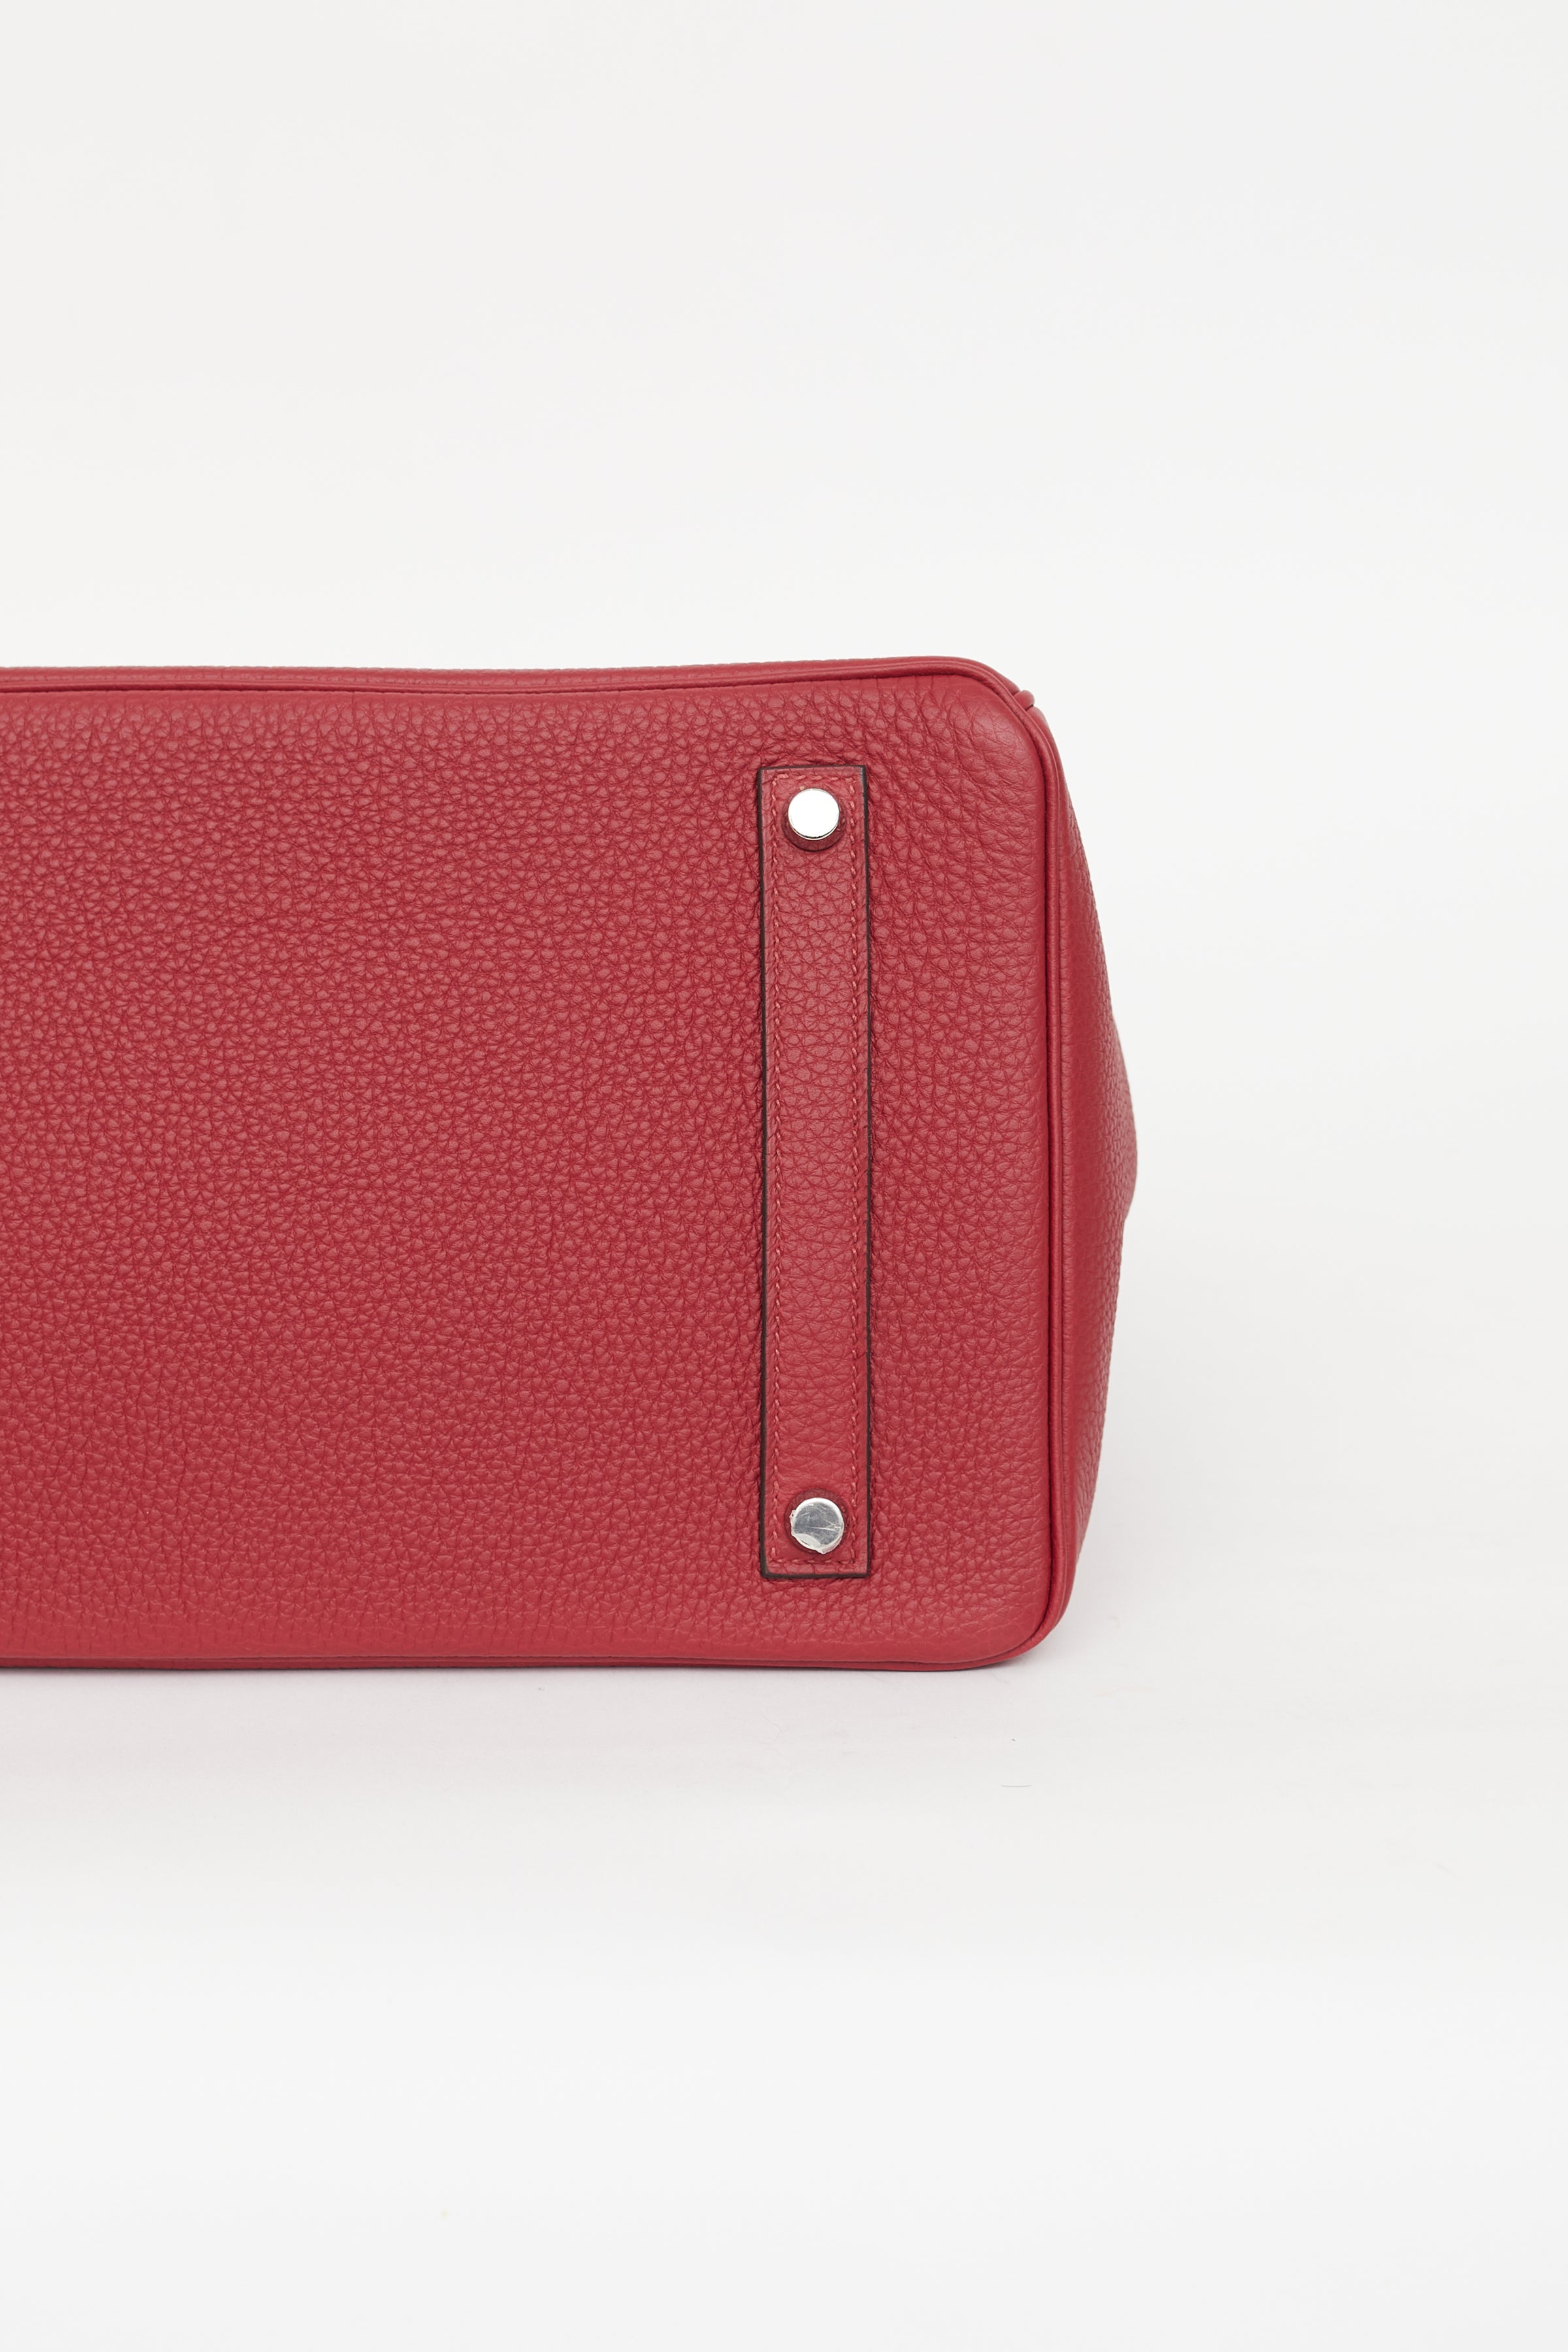 Hermès // 2016 Rouge Grenat Togo Birkin 35 Bag – VSP Consignment